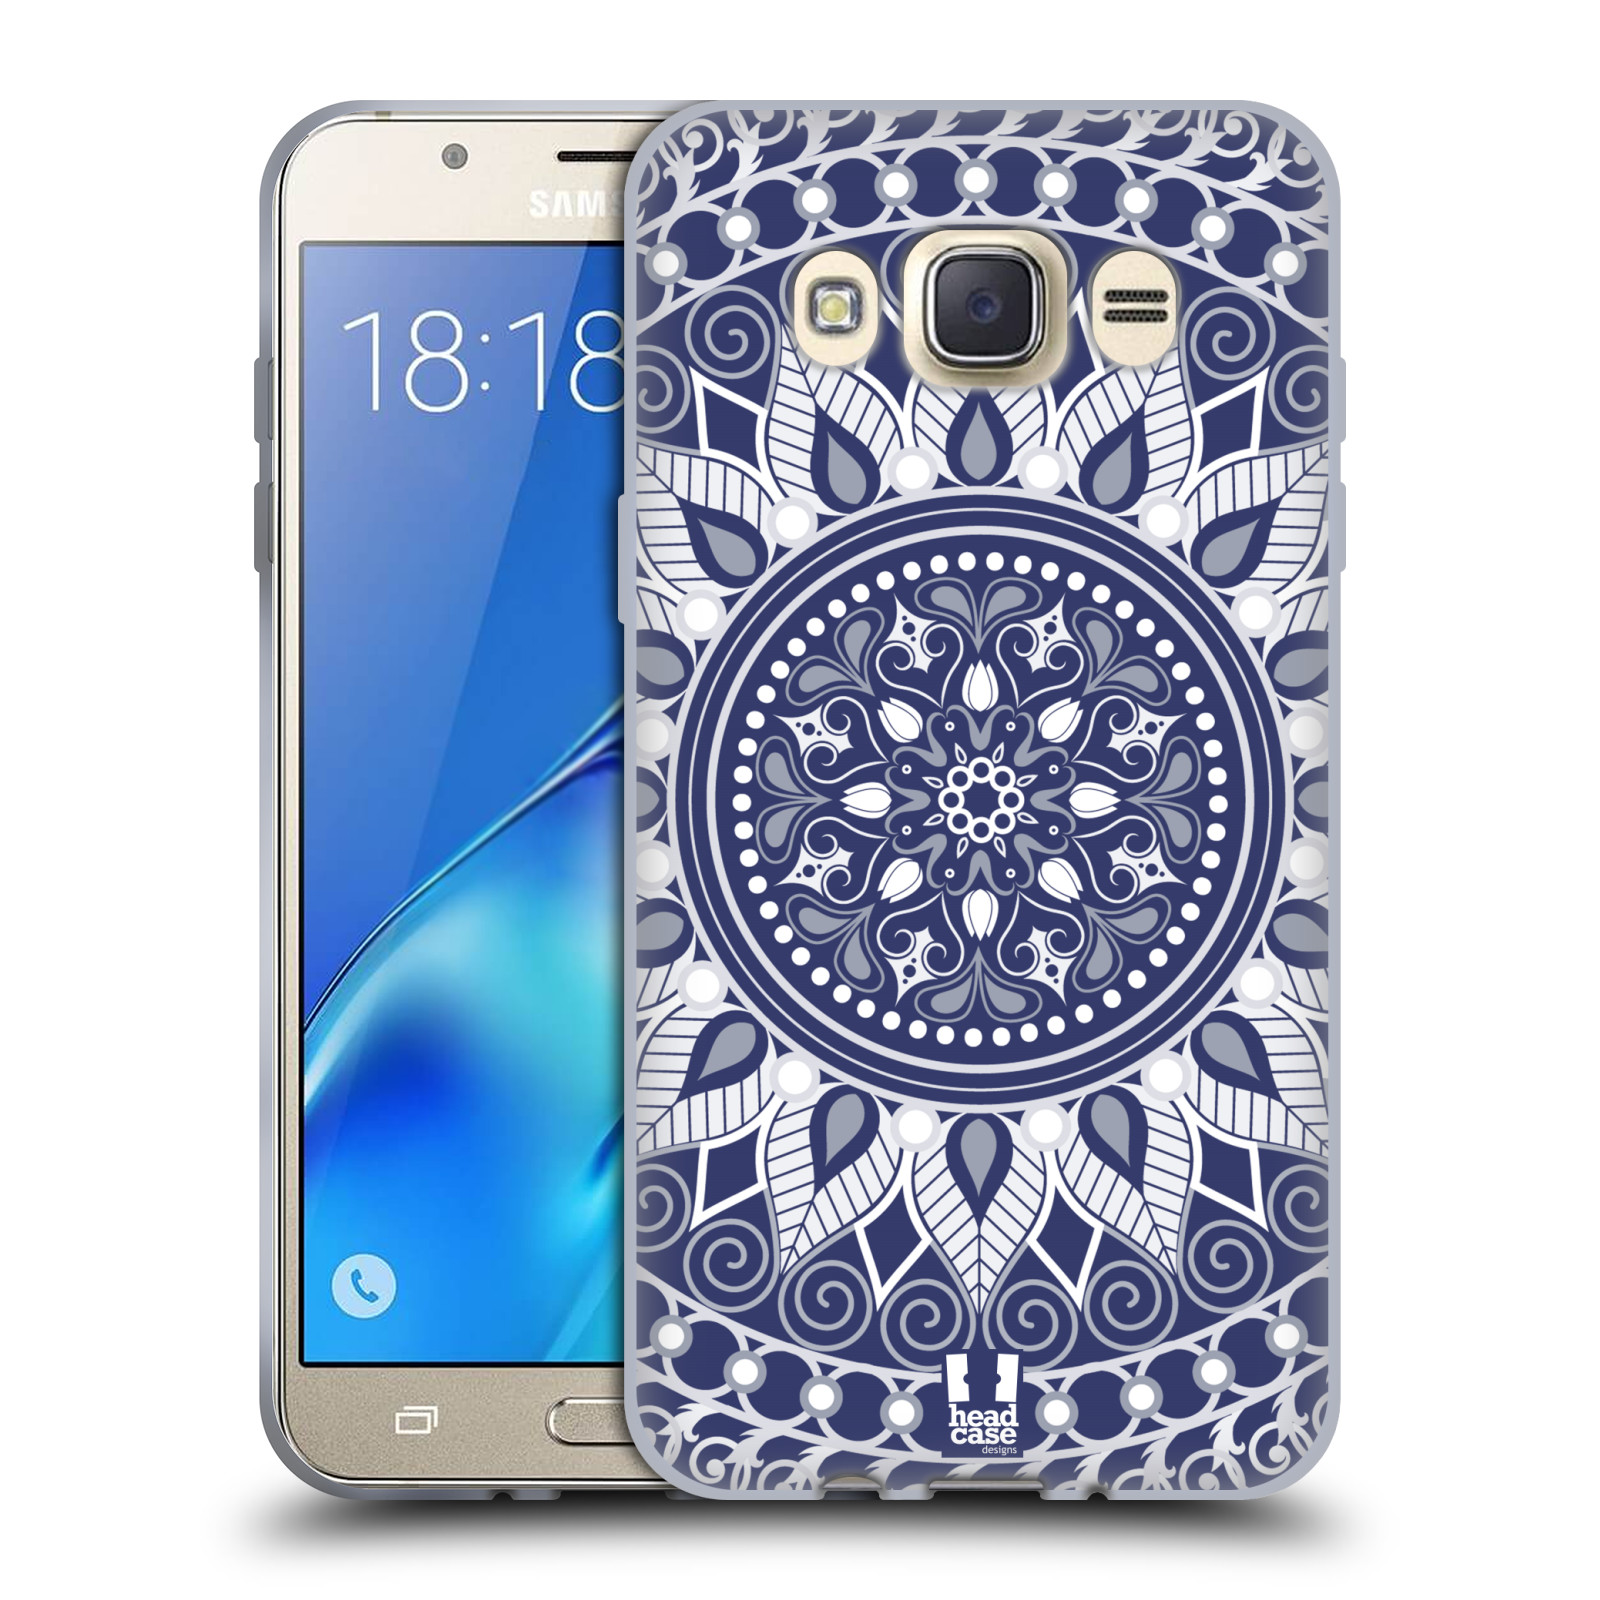 HEAD CASE silikonový obal, kryt na mobil Samsung Galaxy J7 2016 (J710, J710F) vzor Indie Mandala slunce barevný motiv MODRÁ